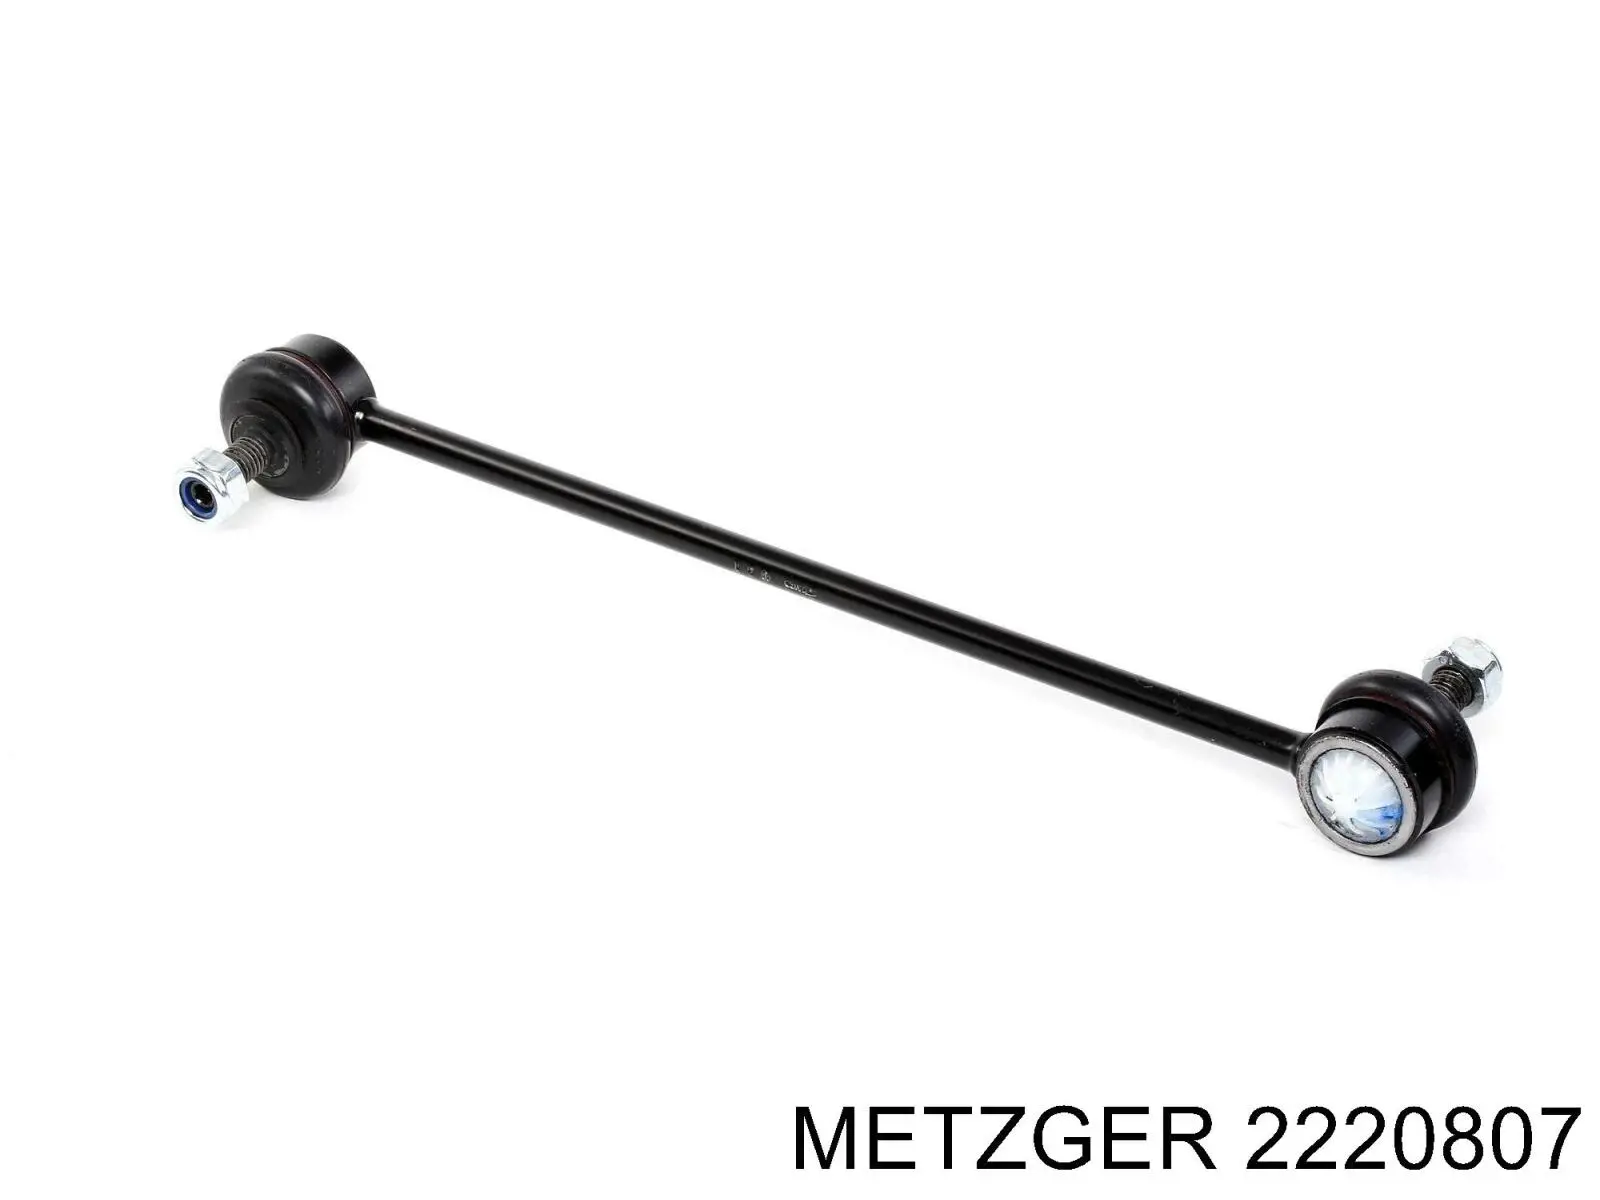 2220807 Metzger tobera de agua regadora, lavado de parabrisas cristal trasero